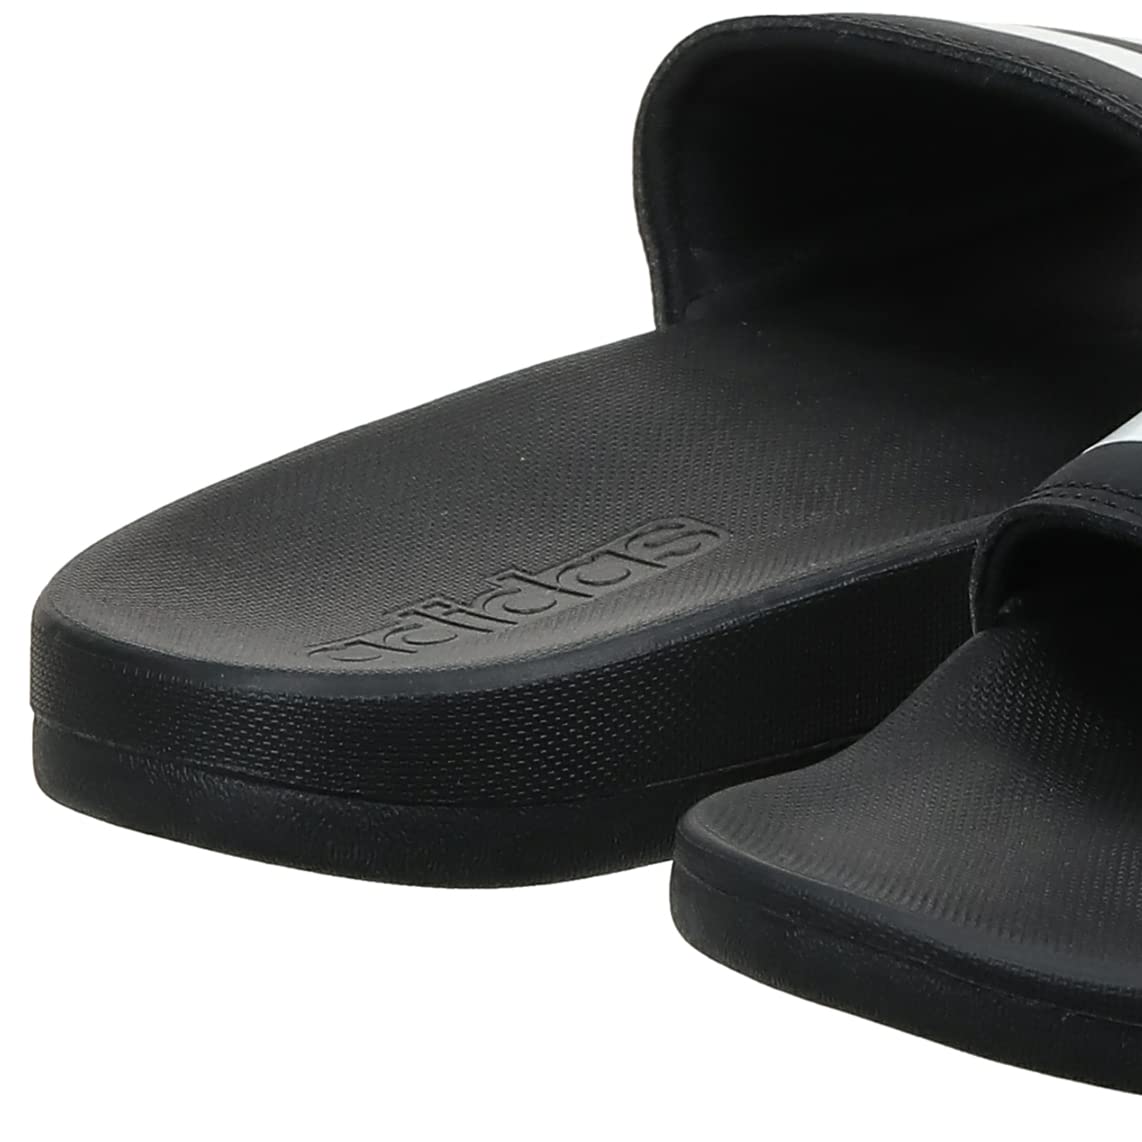 adidas Men's Adilette Comfort Slides Sandal